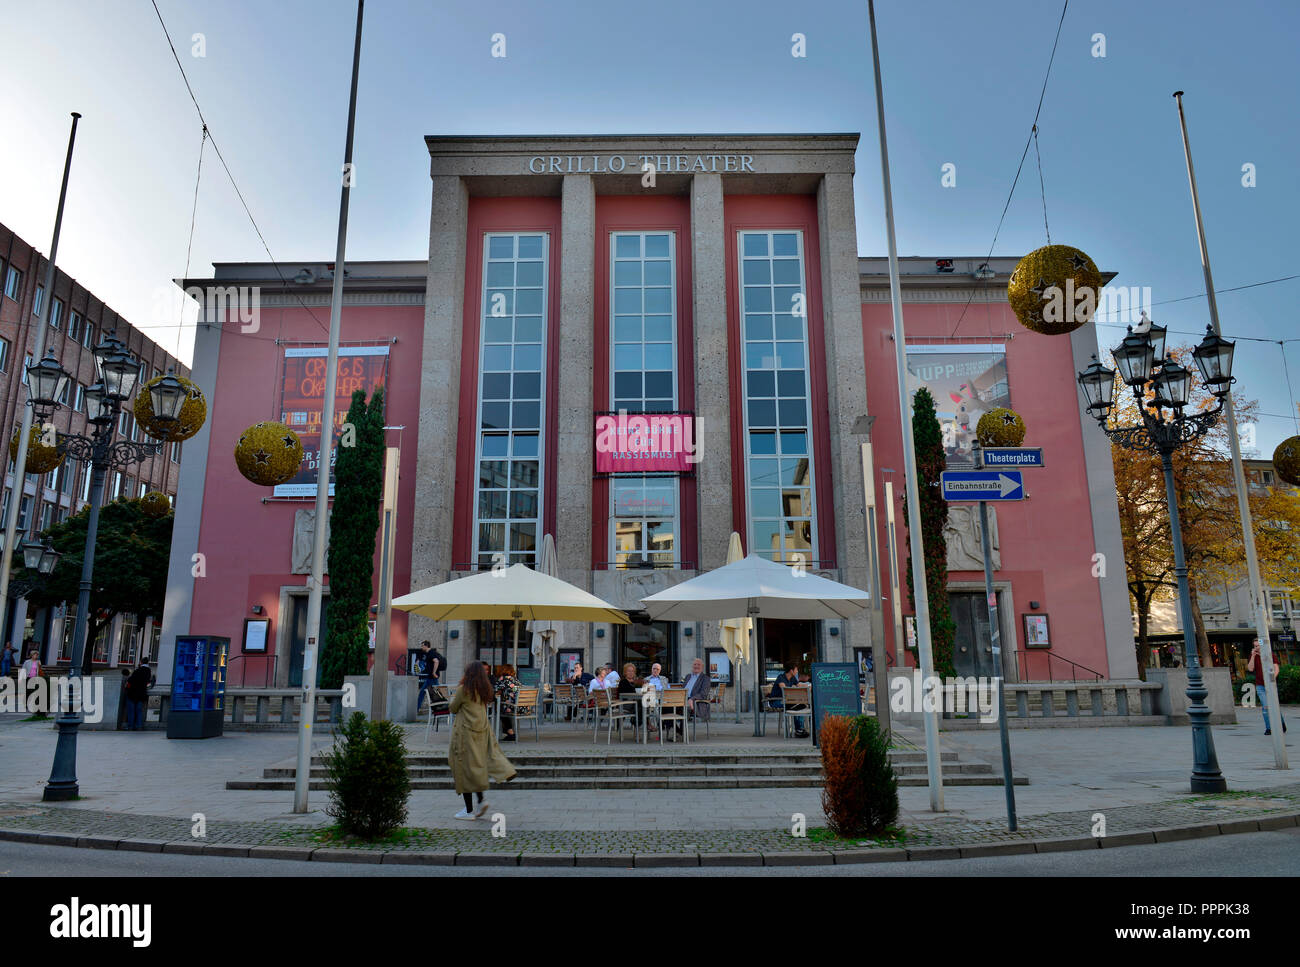 Grillo-Theater, Theaterplatz, Essen, Nordrhein-Westfalen, Deutschland Stock Photo